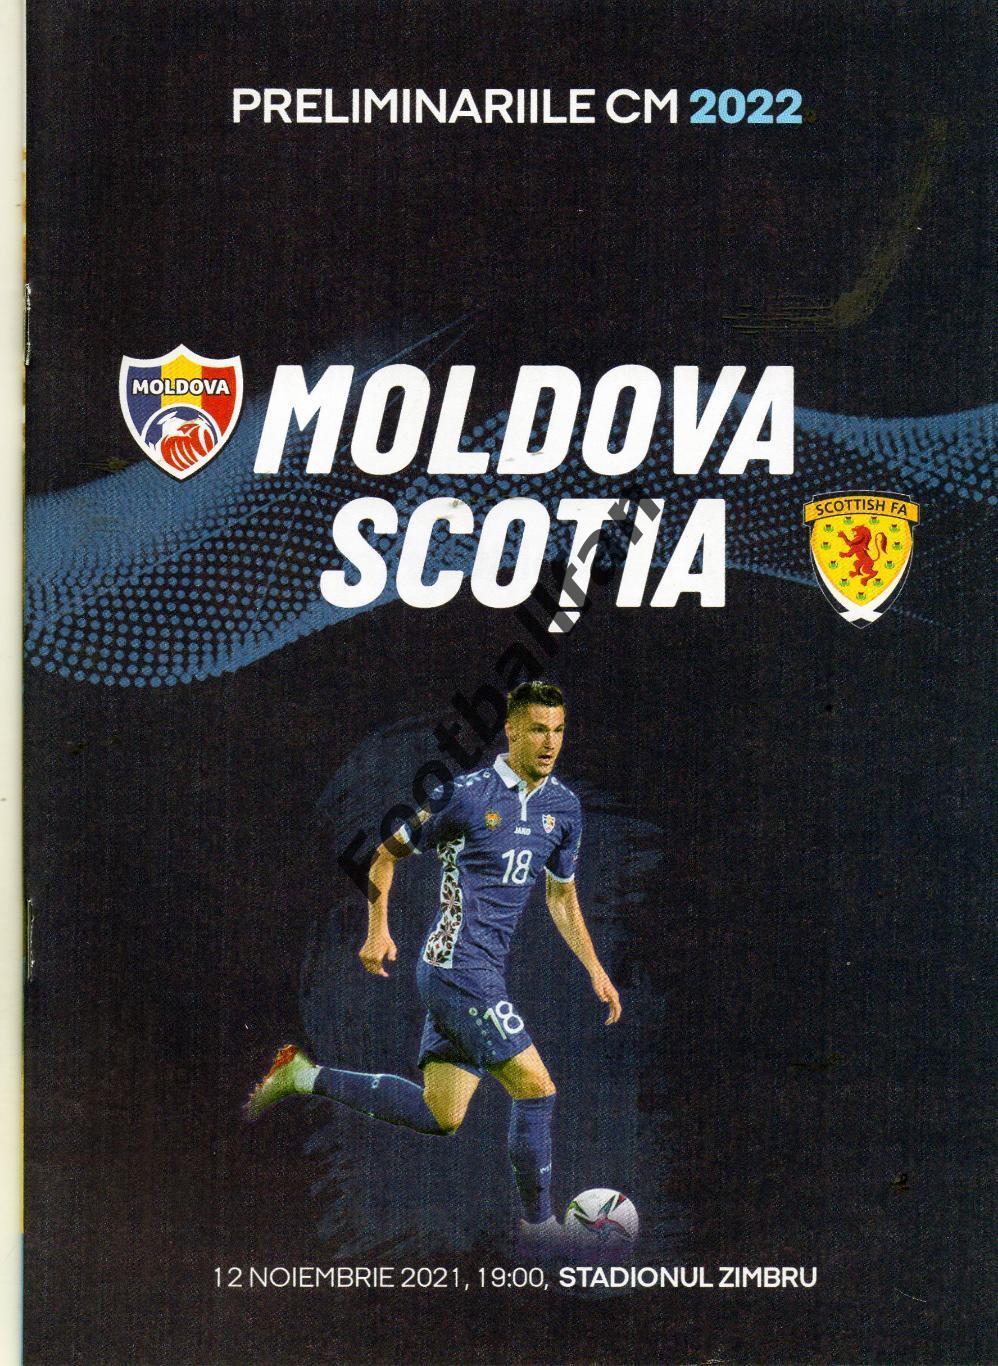 Молдова - Шотландия 12.11.2021